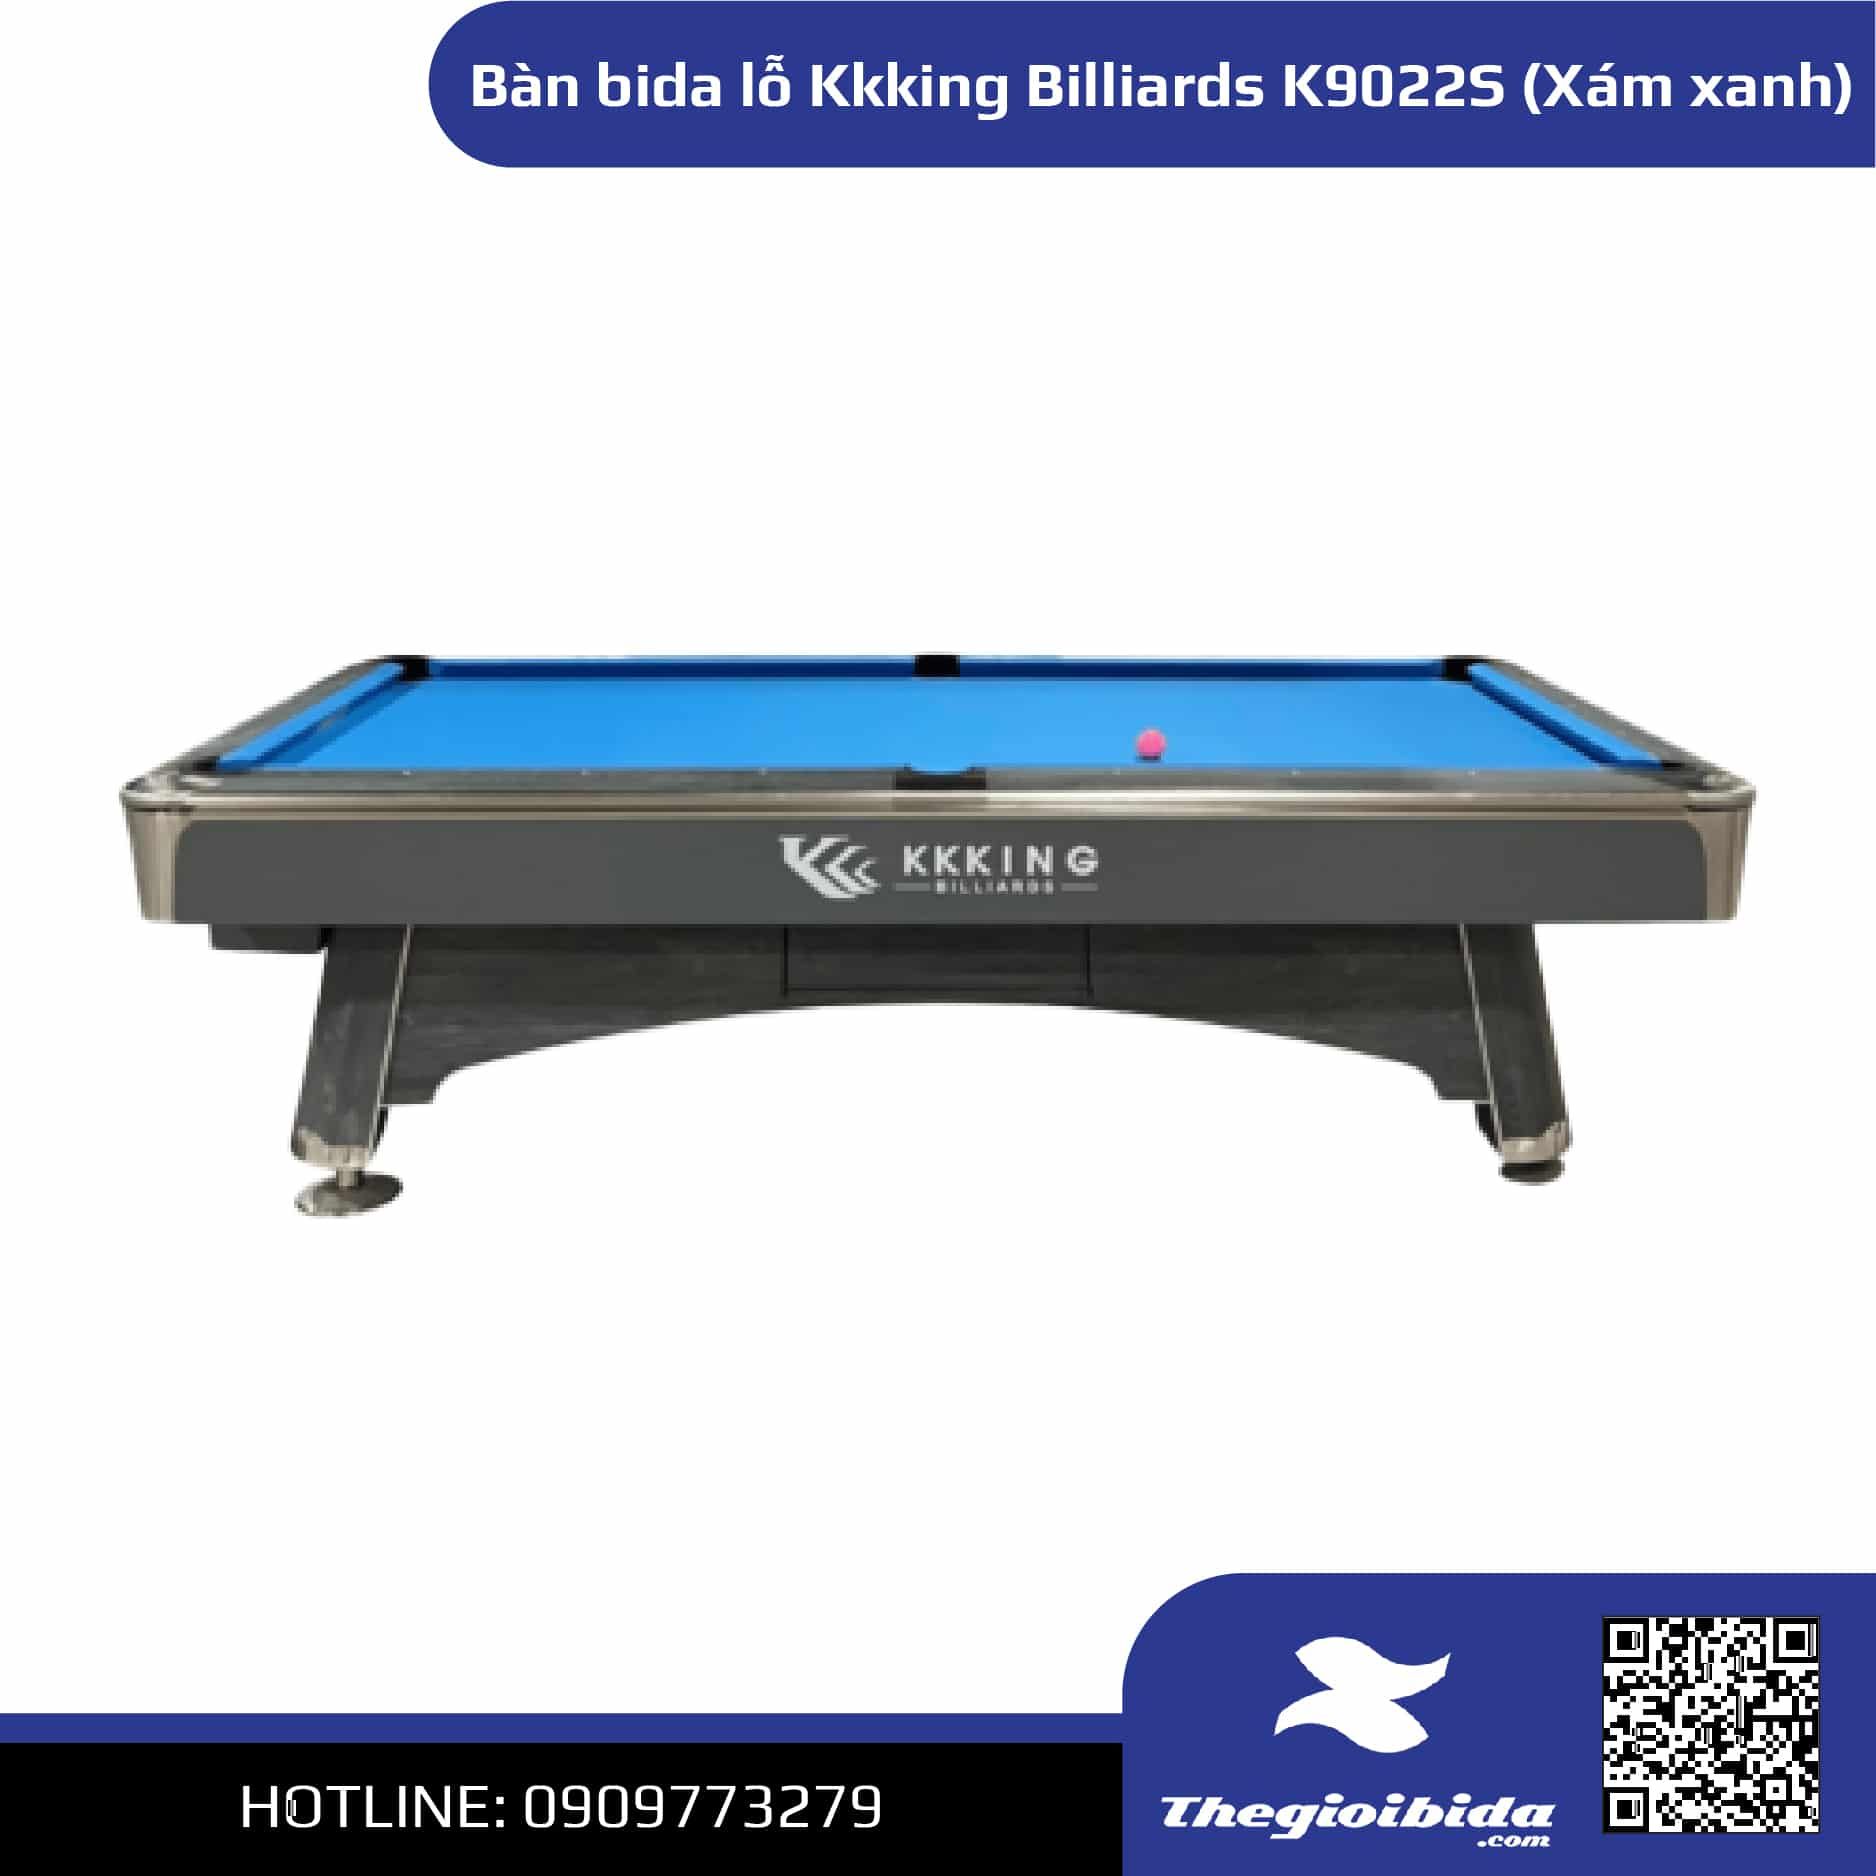 Bàn bida lỗ Kkking Billiards K9022S (Xám xanh)